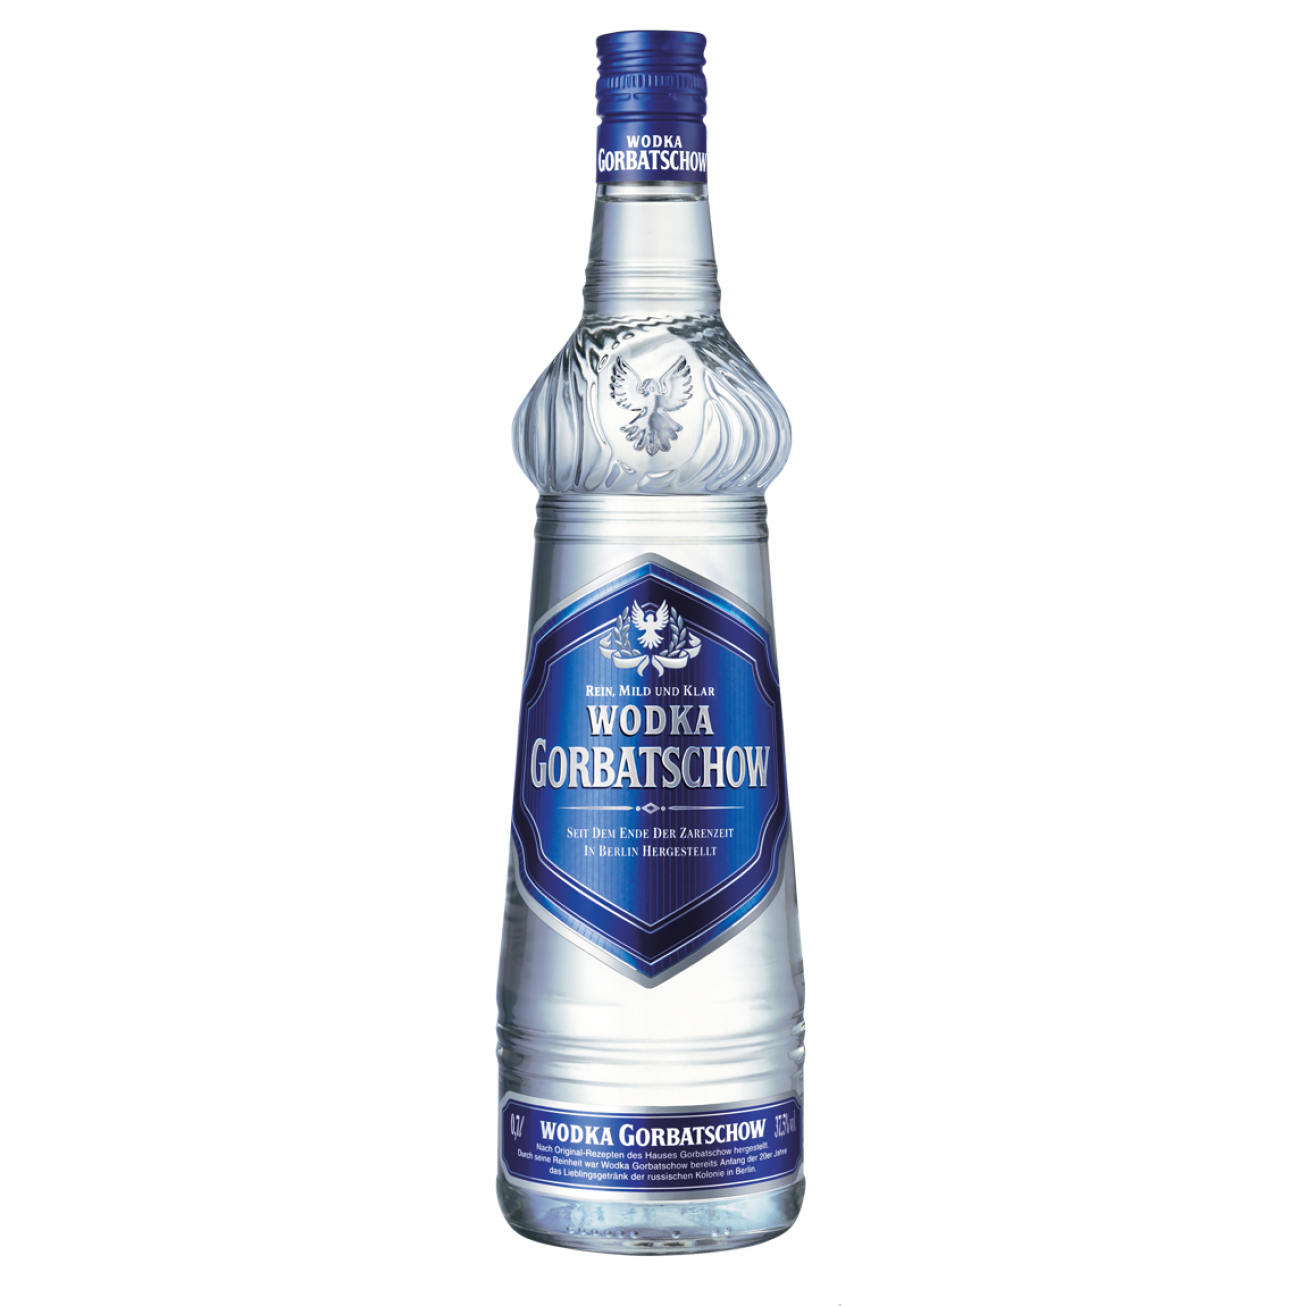 Gorbatschow Wodka 37,5% Vol. 0,7l